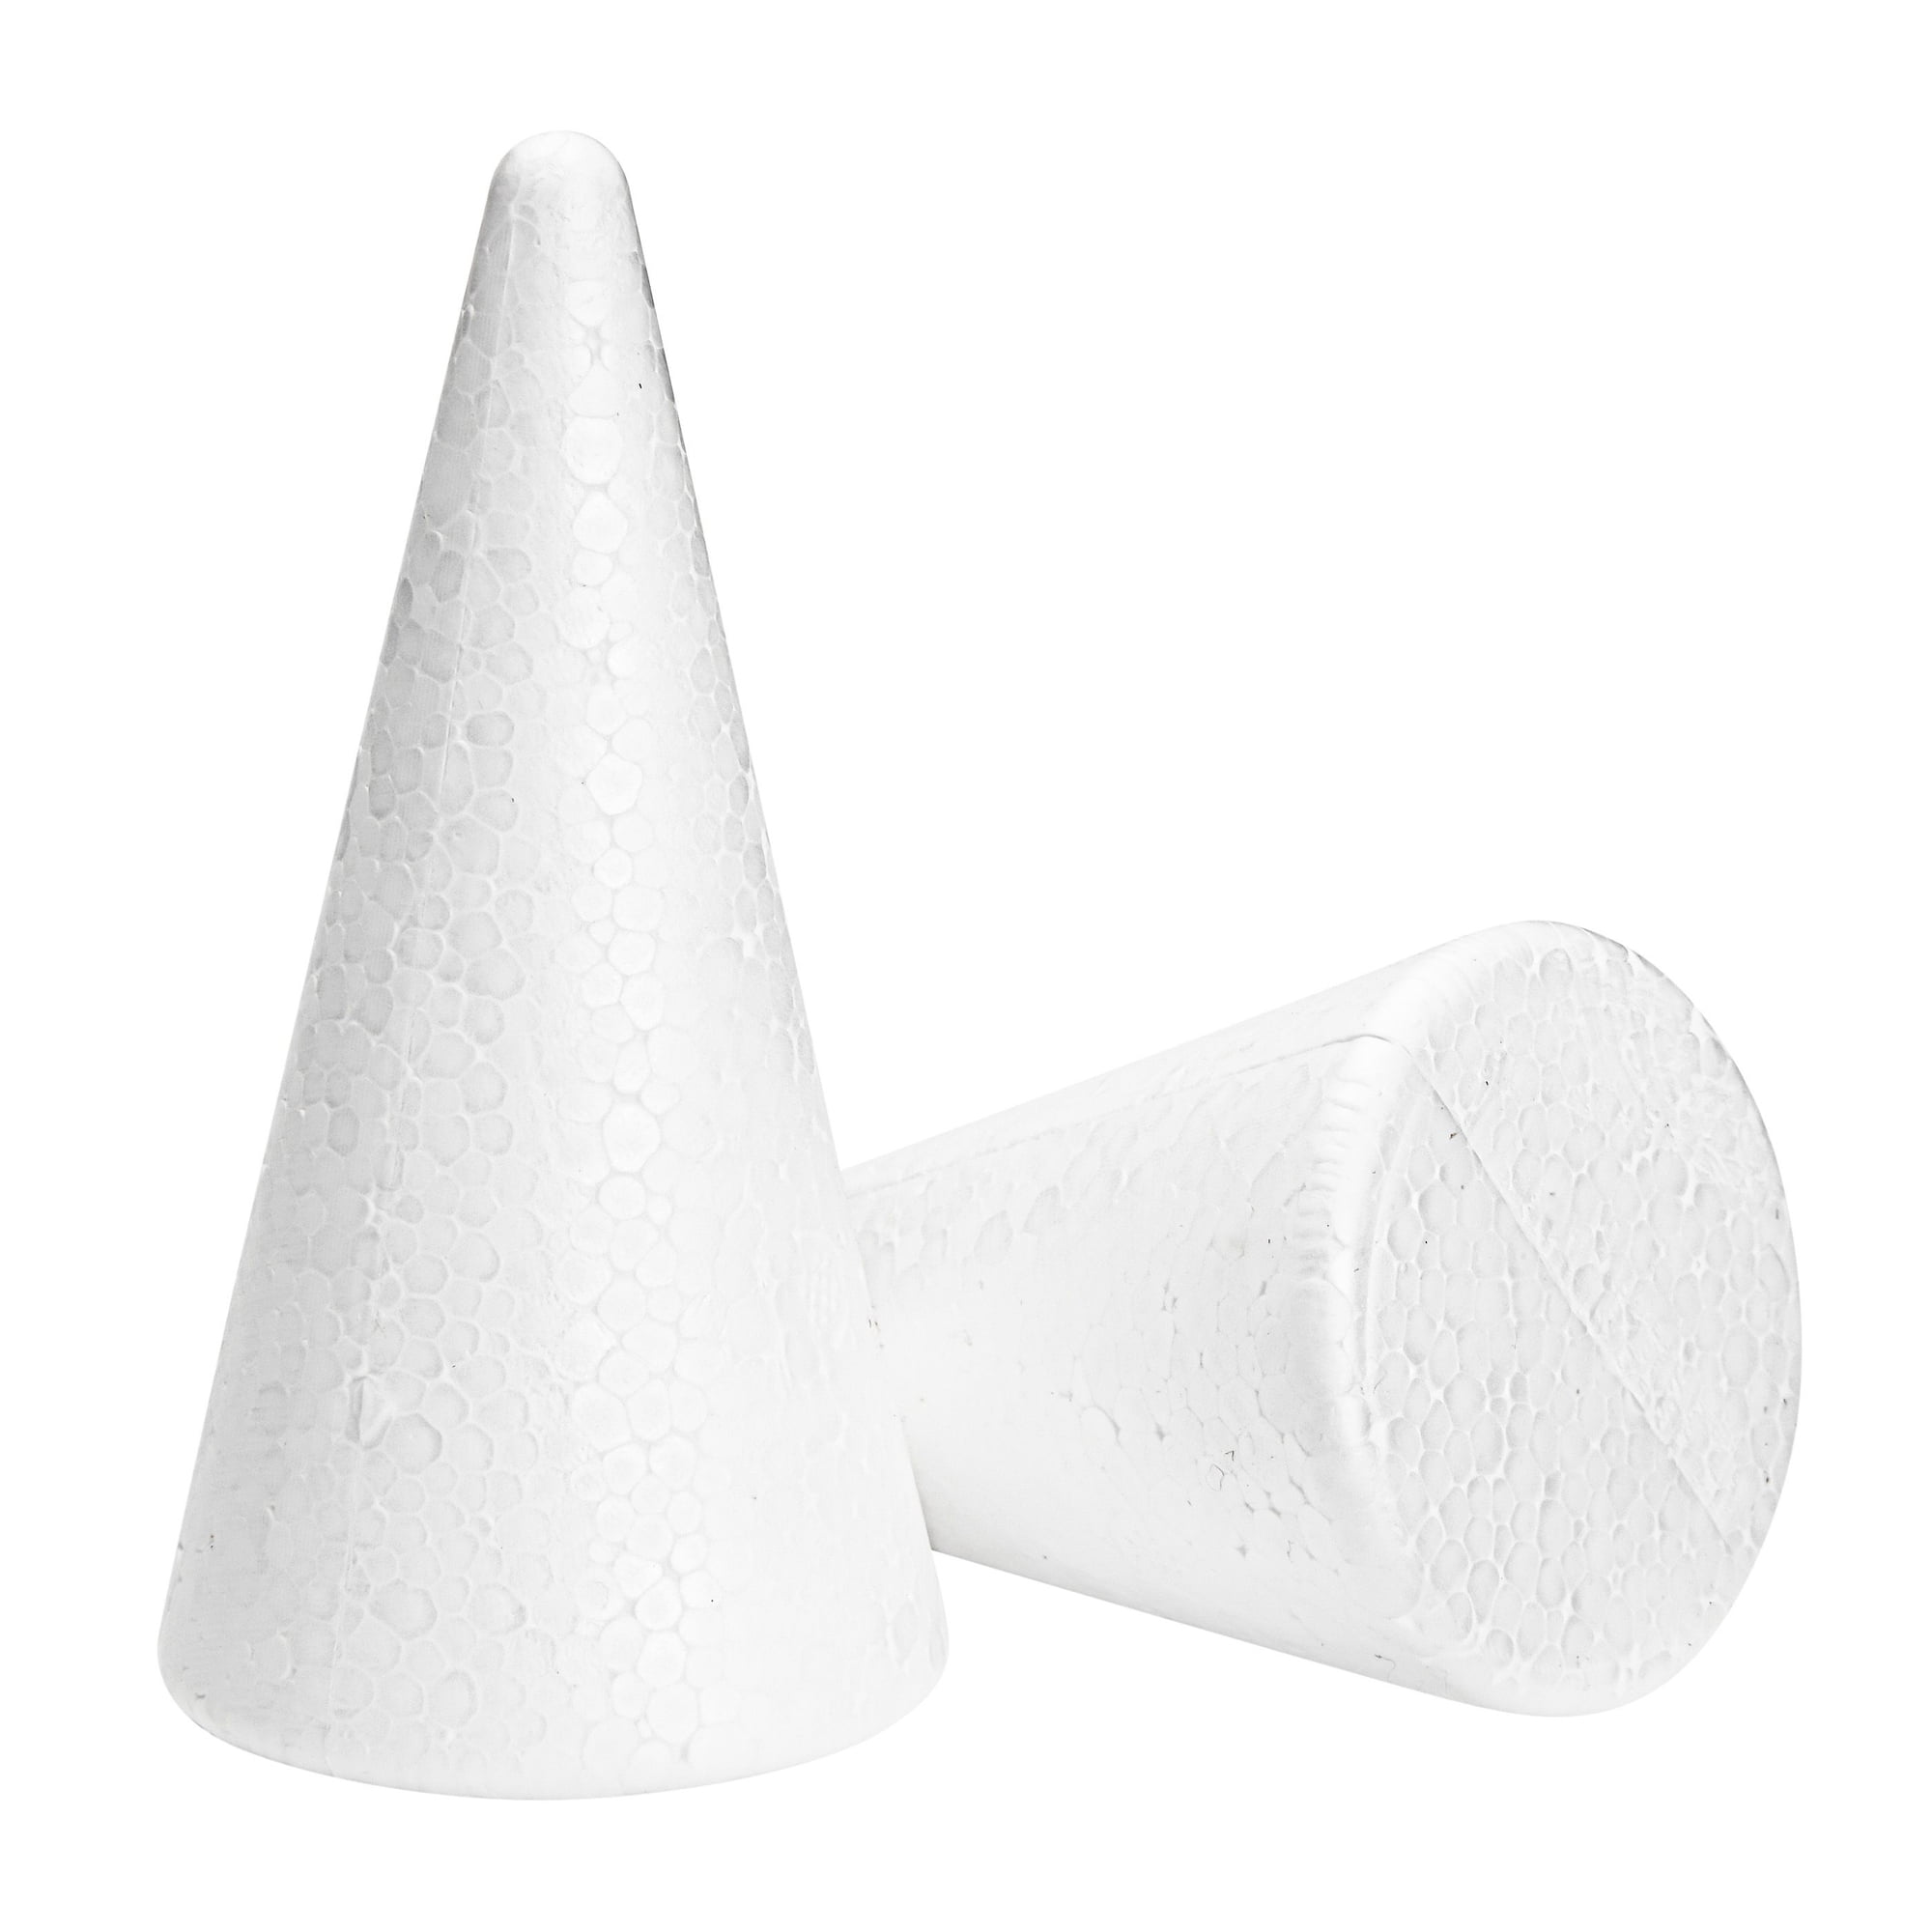  DOITOOL Cardboard Cones 3PCS White Craft Foam Cones